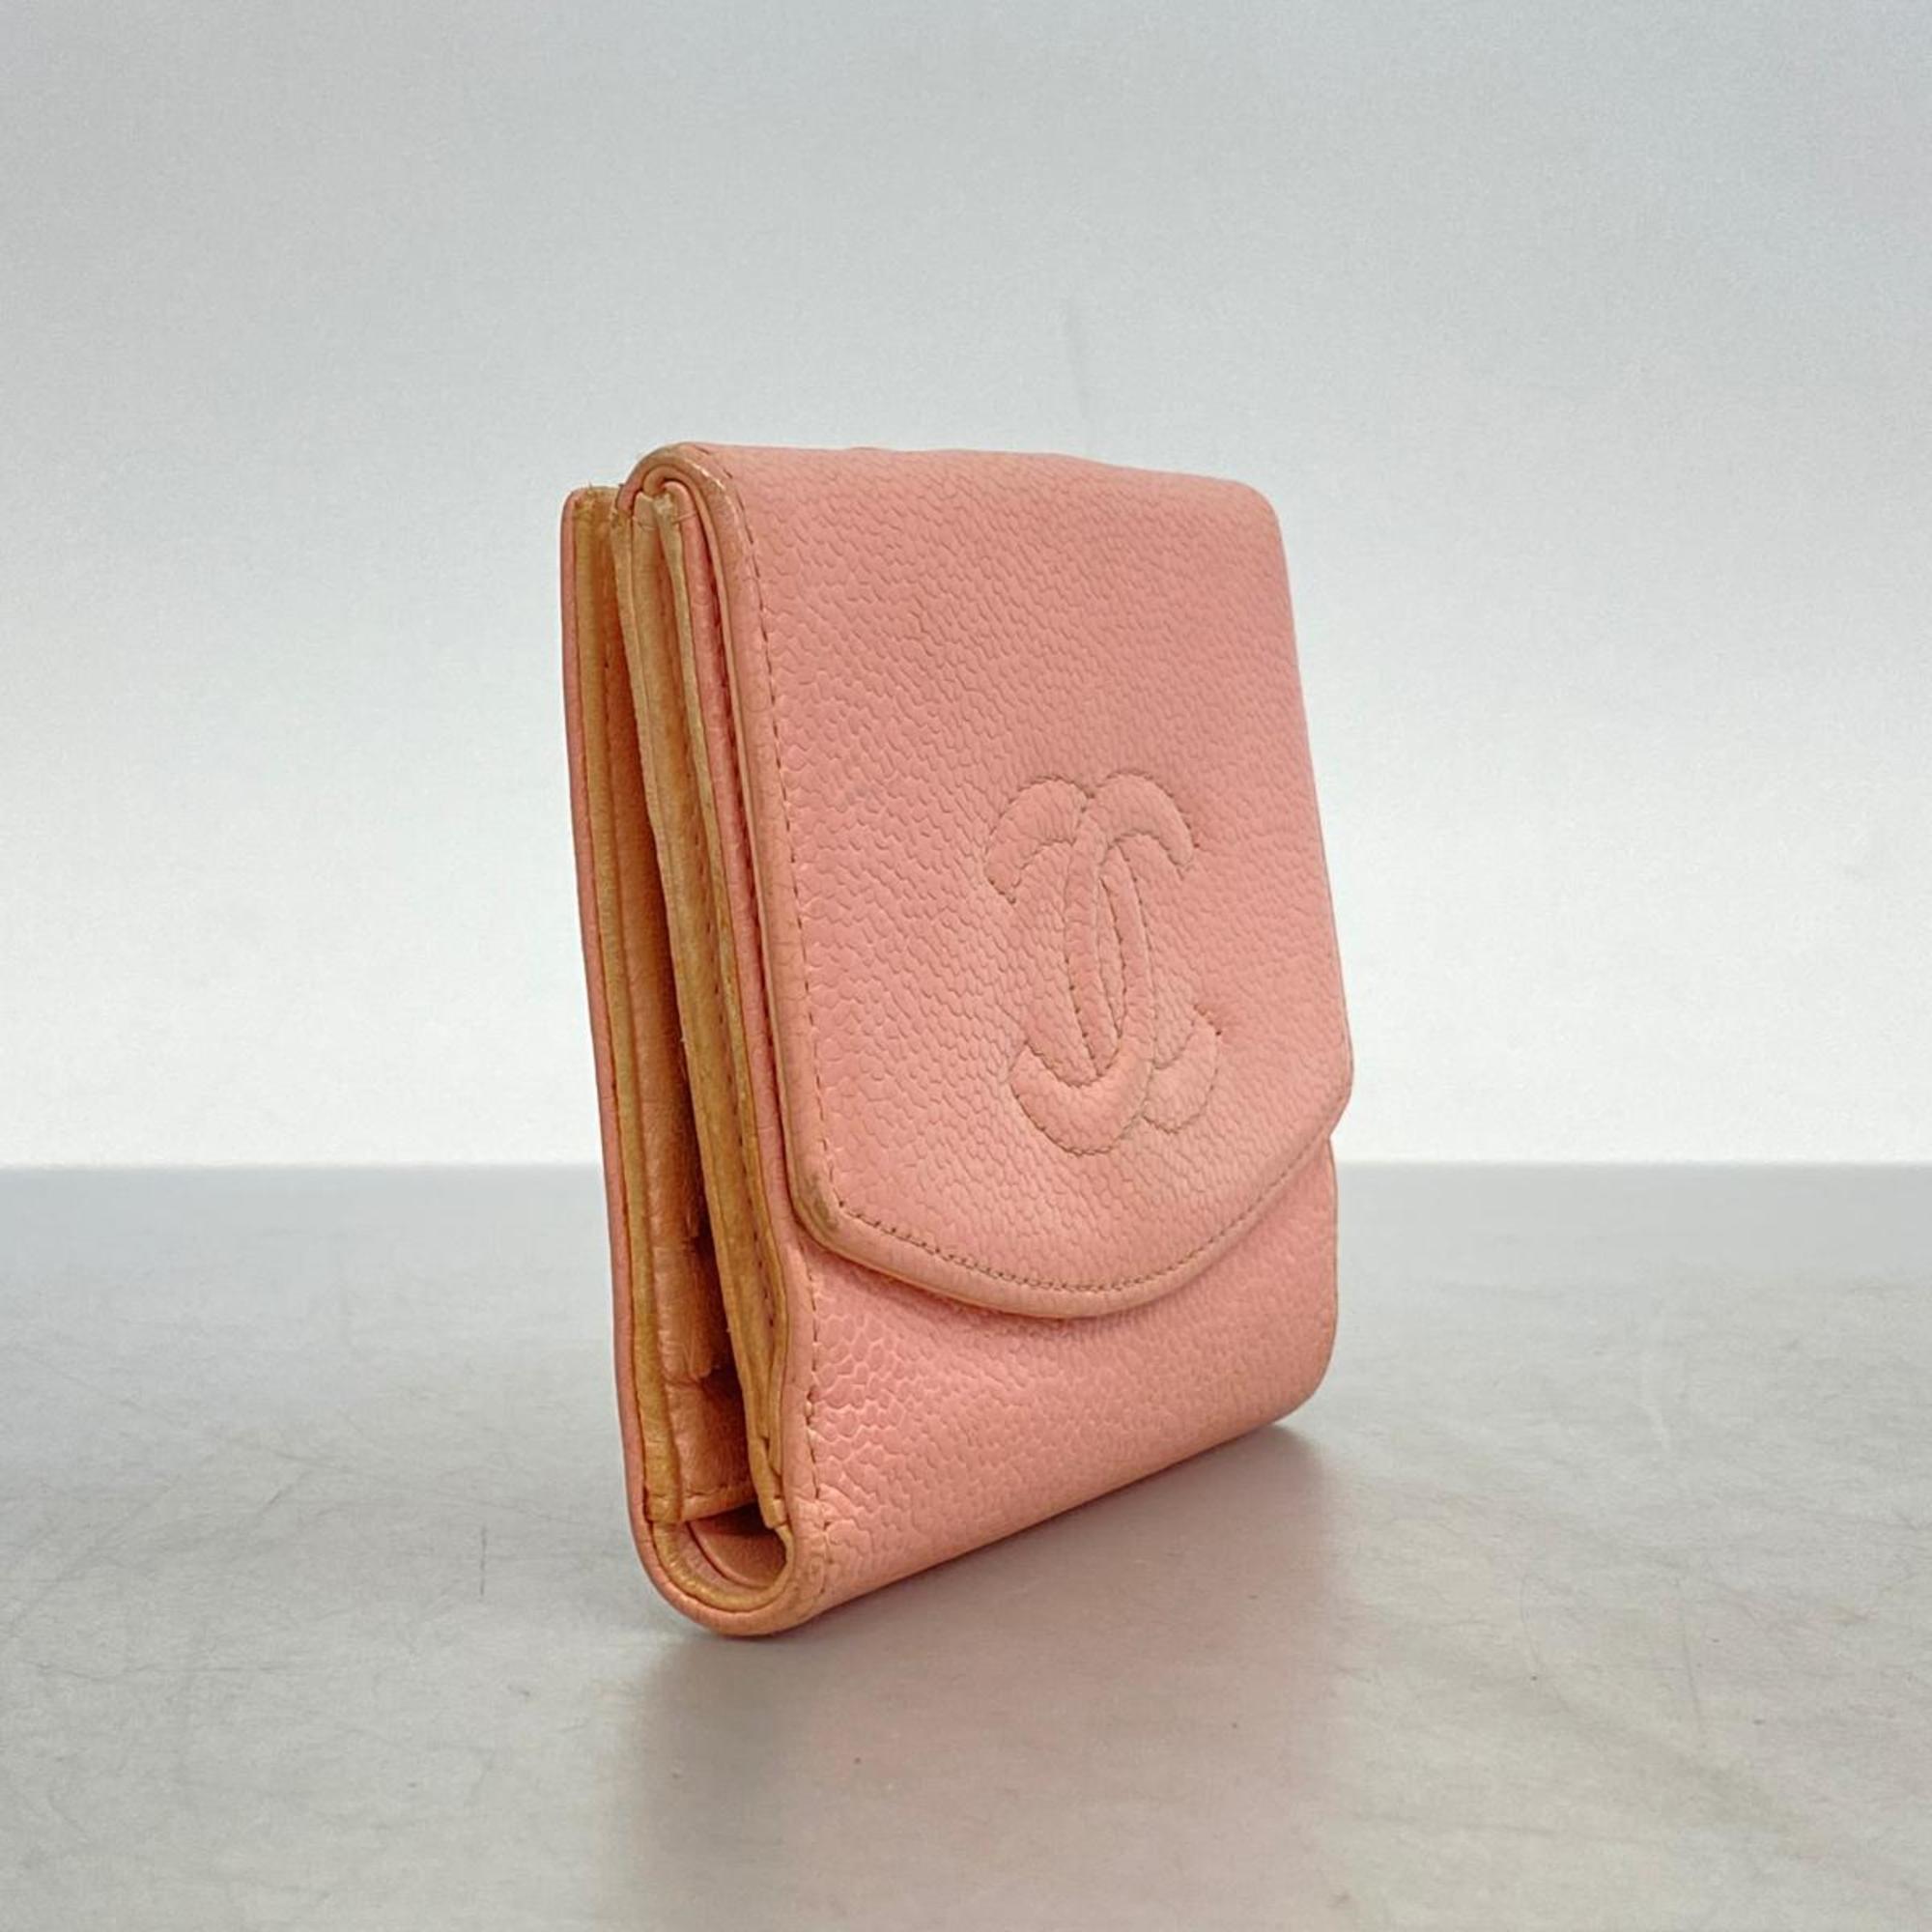 シャネル(Chanel) シャネル 財布 キャビアスキン ライトピンク   レディース